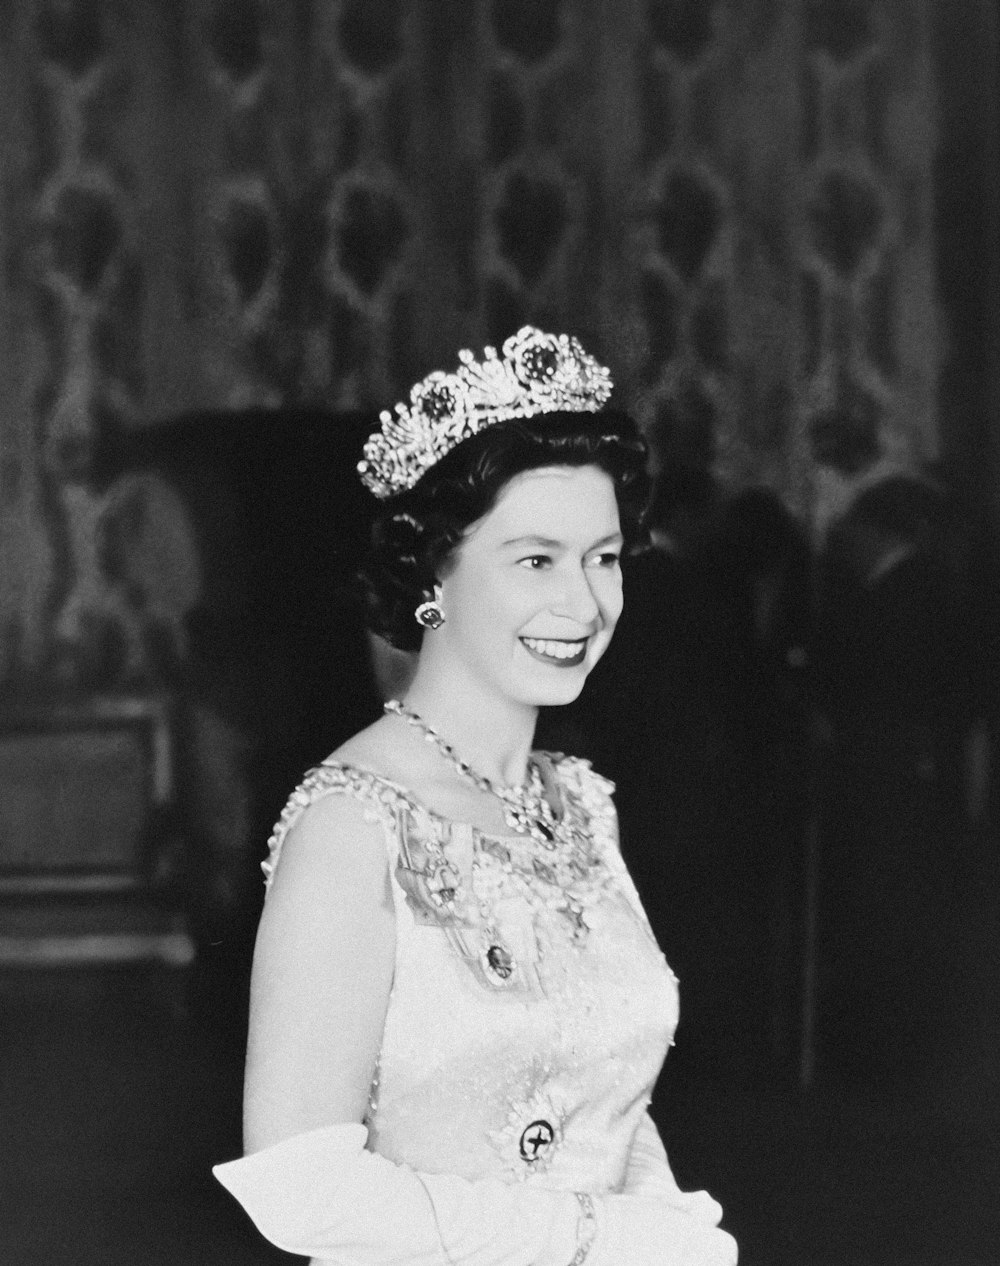 Una foto en blanco y negro de una mujer con una tiara